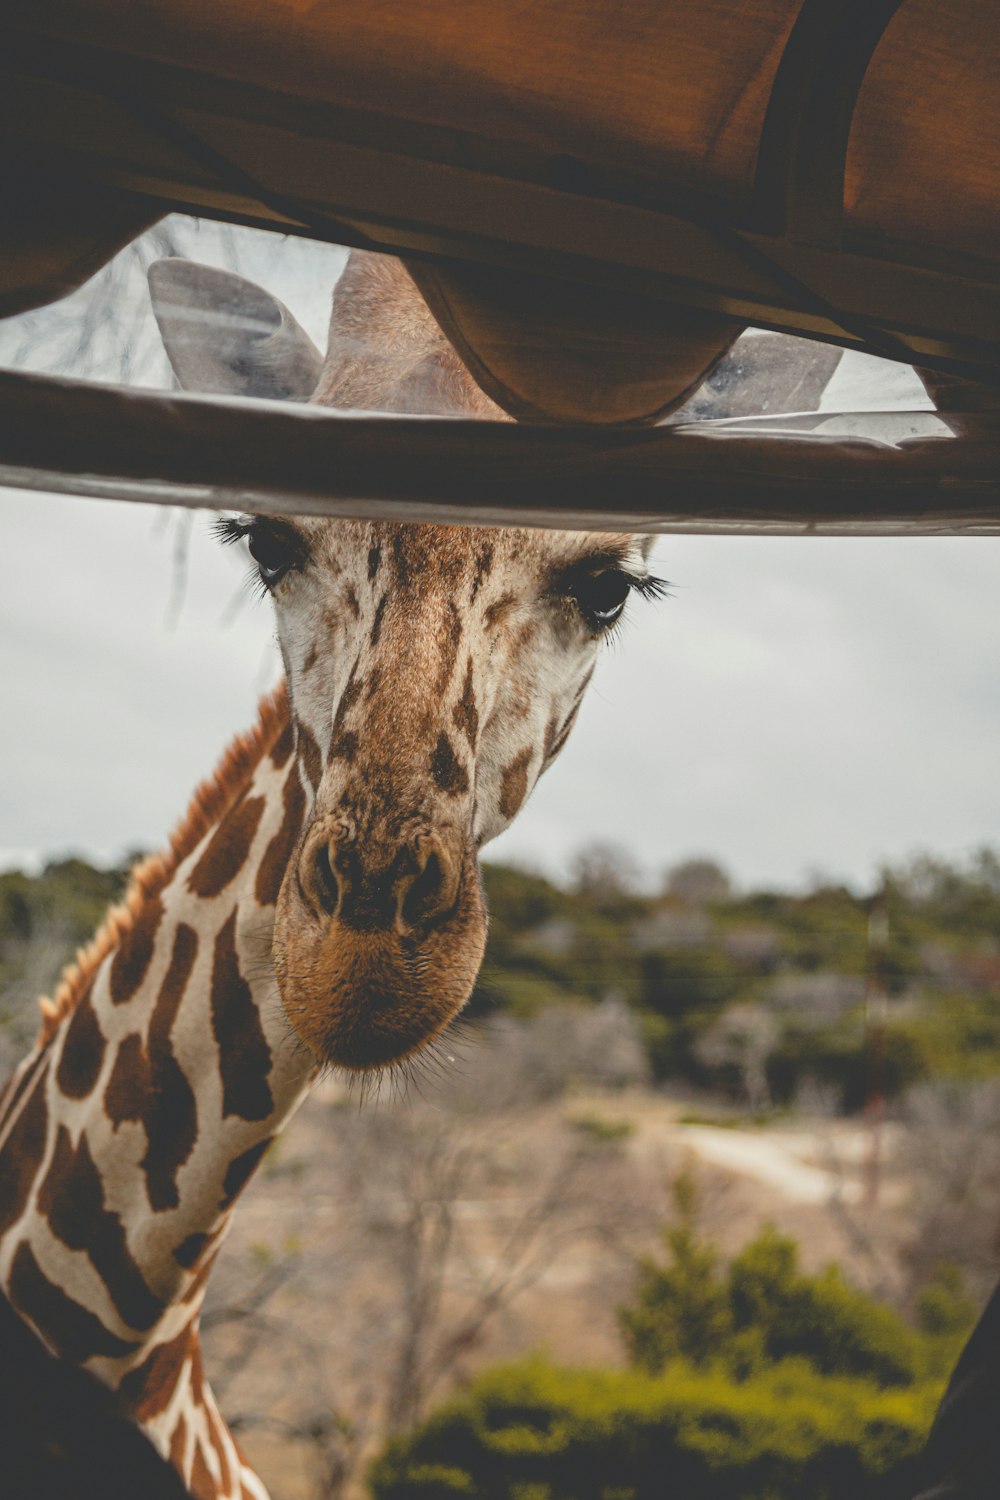 cabeça de girafa em fotografia de perto